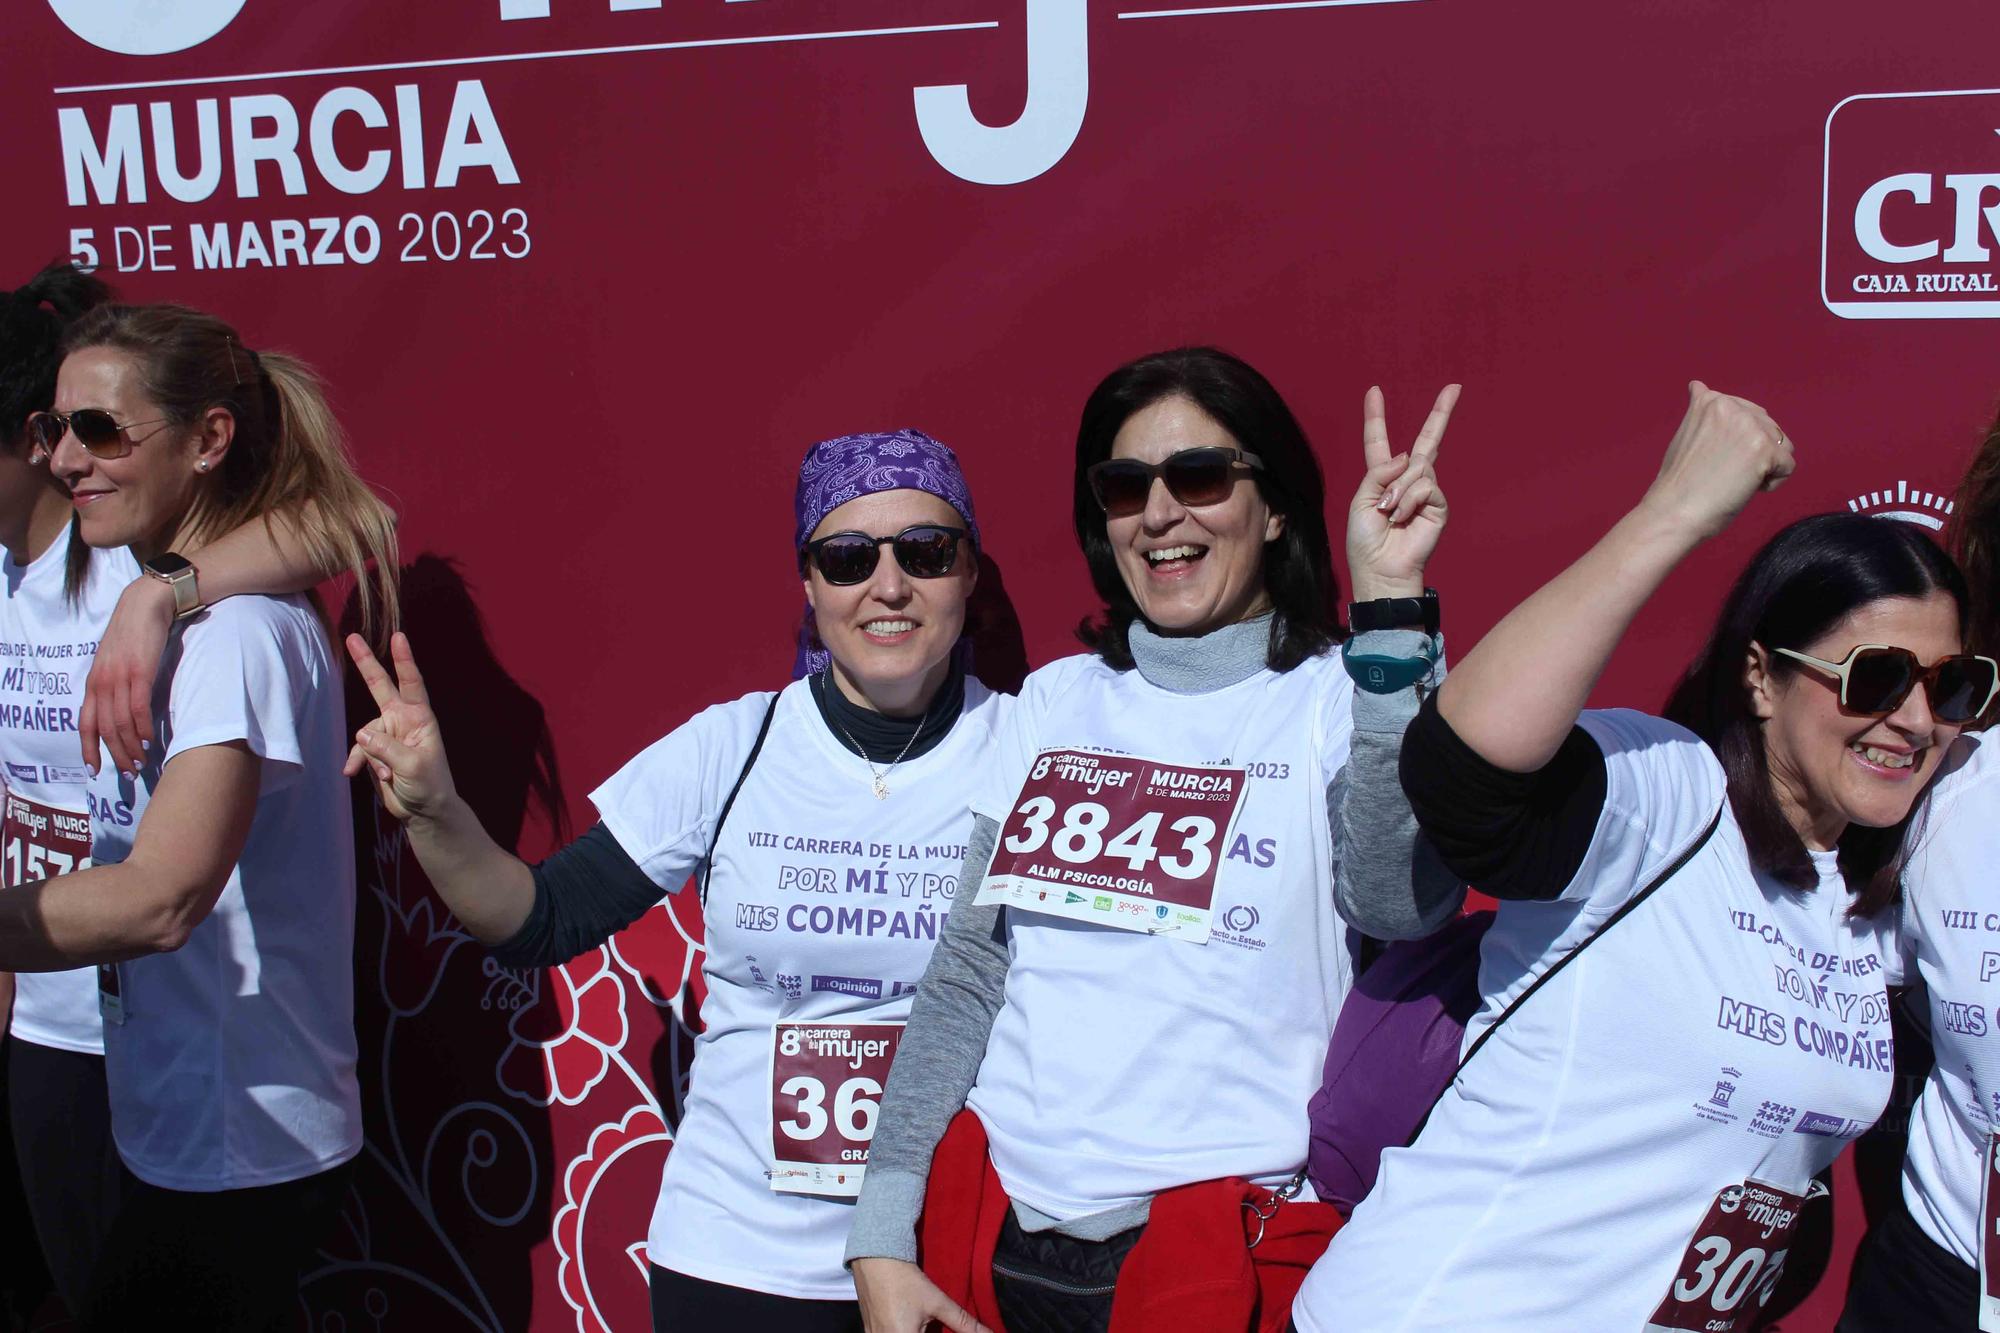 Carrera de la Mujer Murcia 2023: Photocall (3)